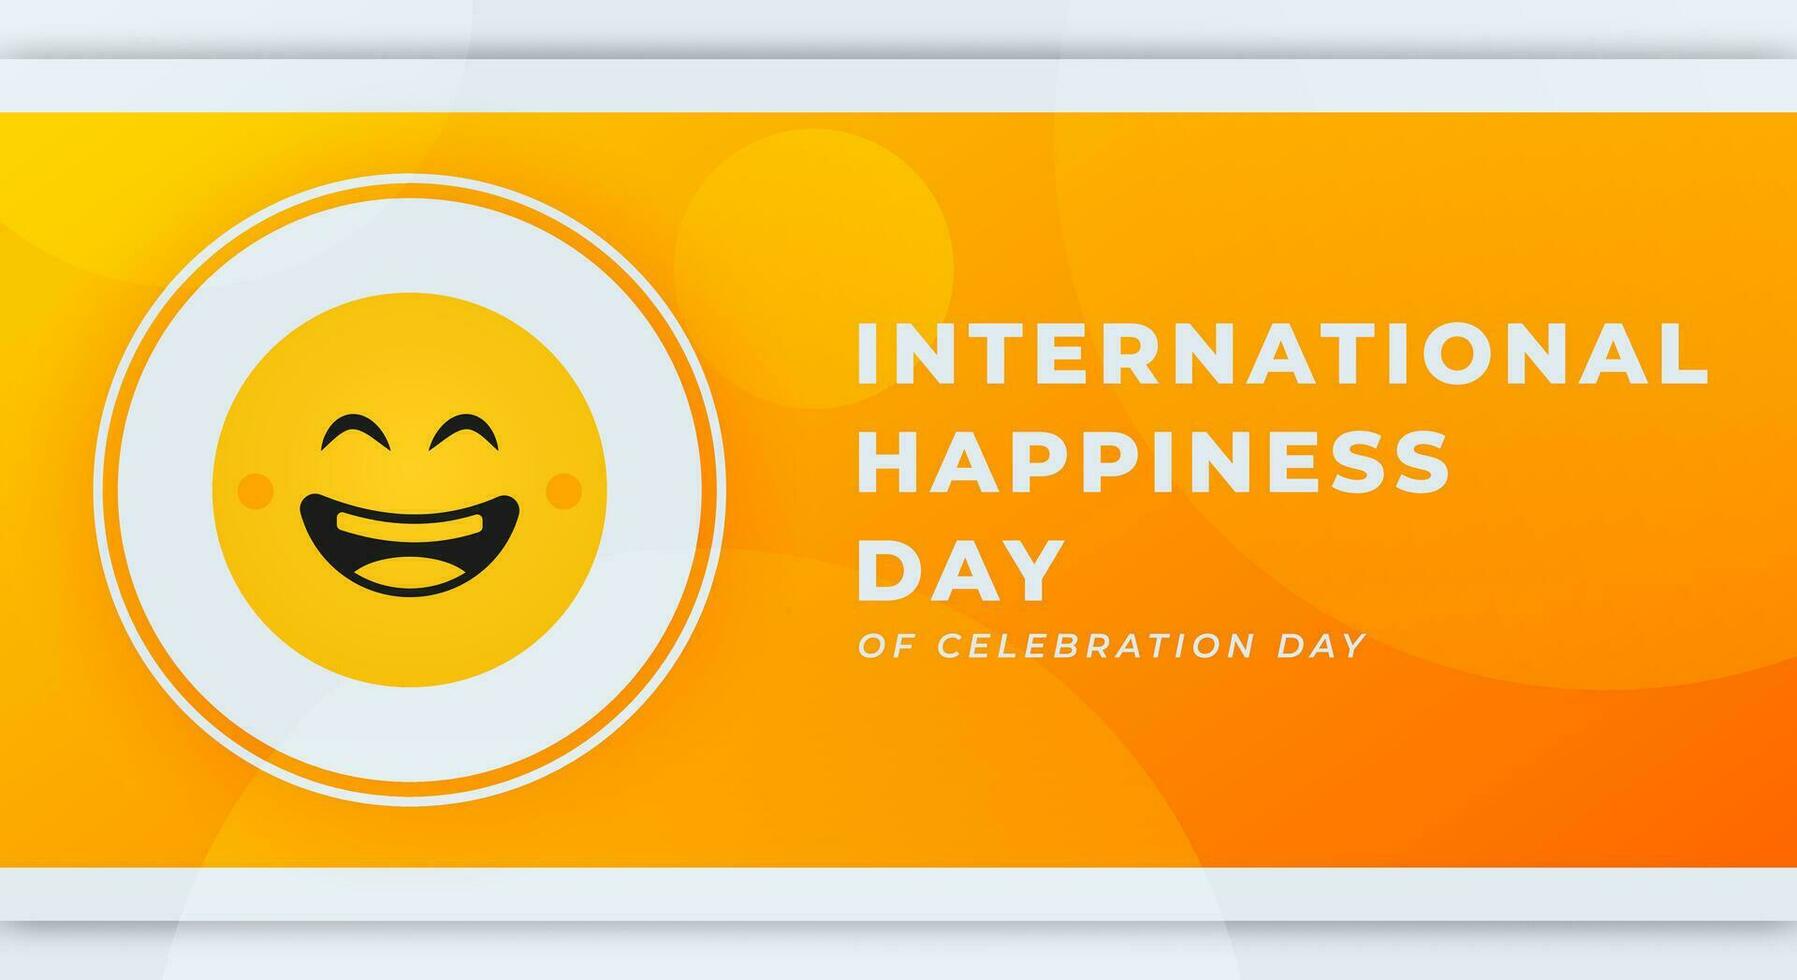 internacional dia do felicidade celebração vetor Projeto ilustração para fundo, poster, bandeira, anúncio, cumprimento cartão